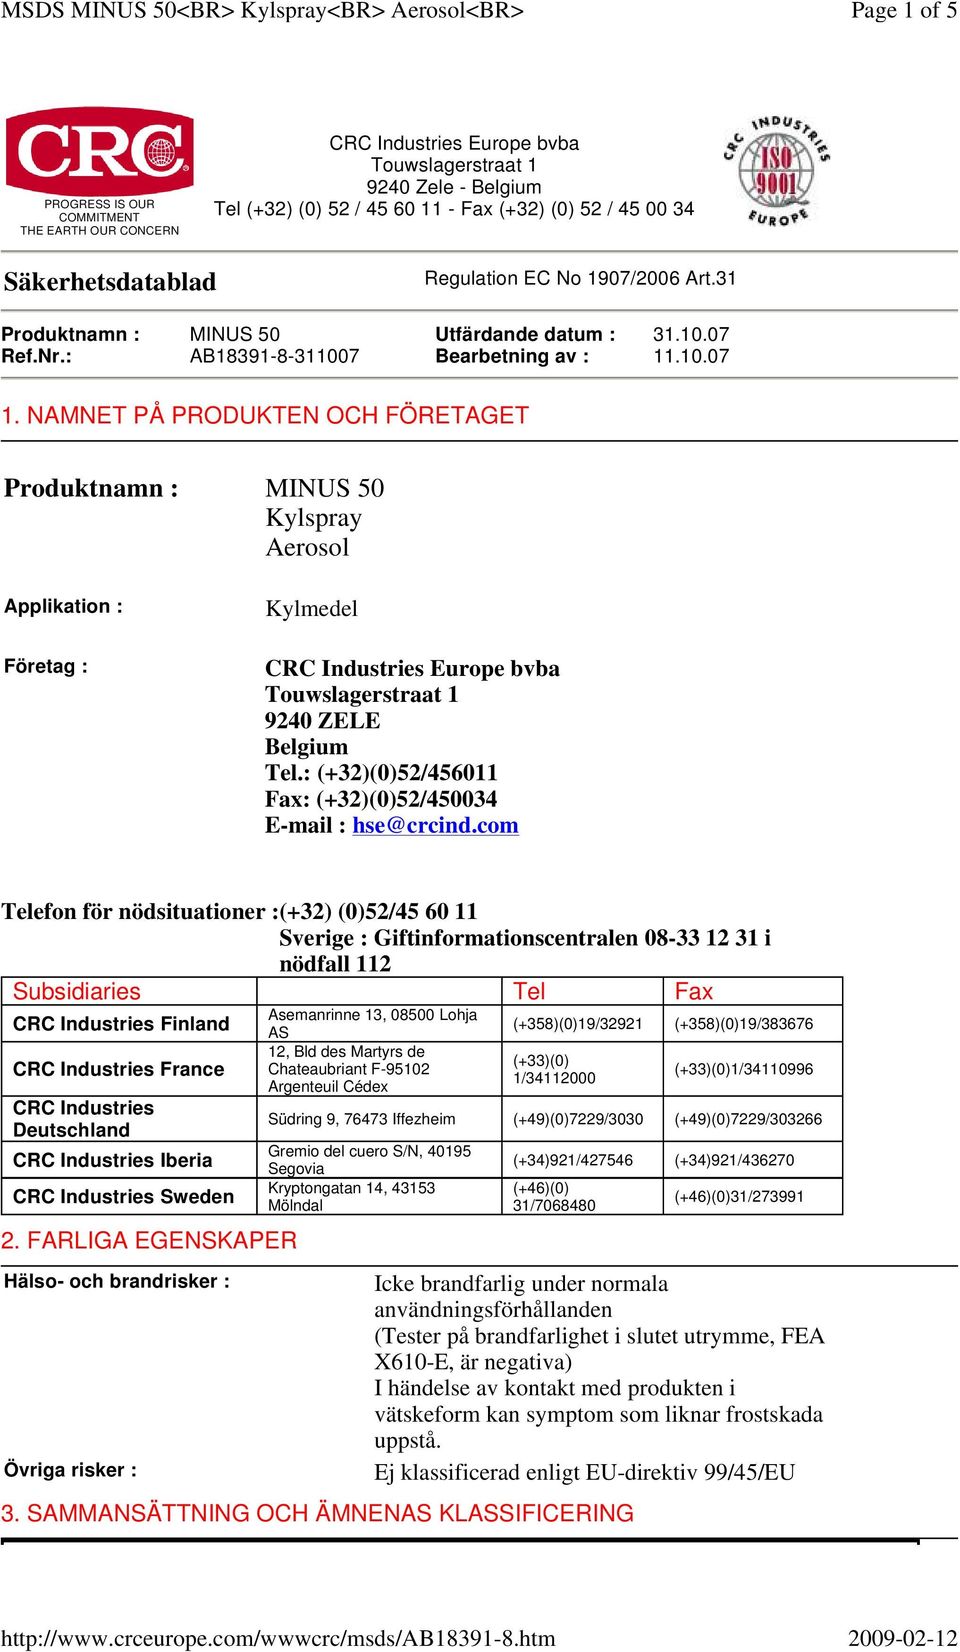 NAMNET PÅ PRODUKTEN OCH FÖRETAGET Produktnamn : MINUS 50 Kylspray Aerosol Applikation : Företag : Kylmedel CRC Industries Europe bvba Touwslagerstraat 1 9240 ZELE Belgium Tel.